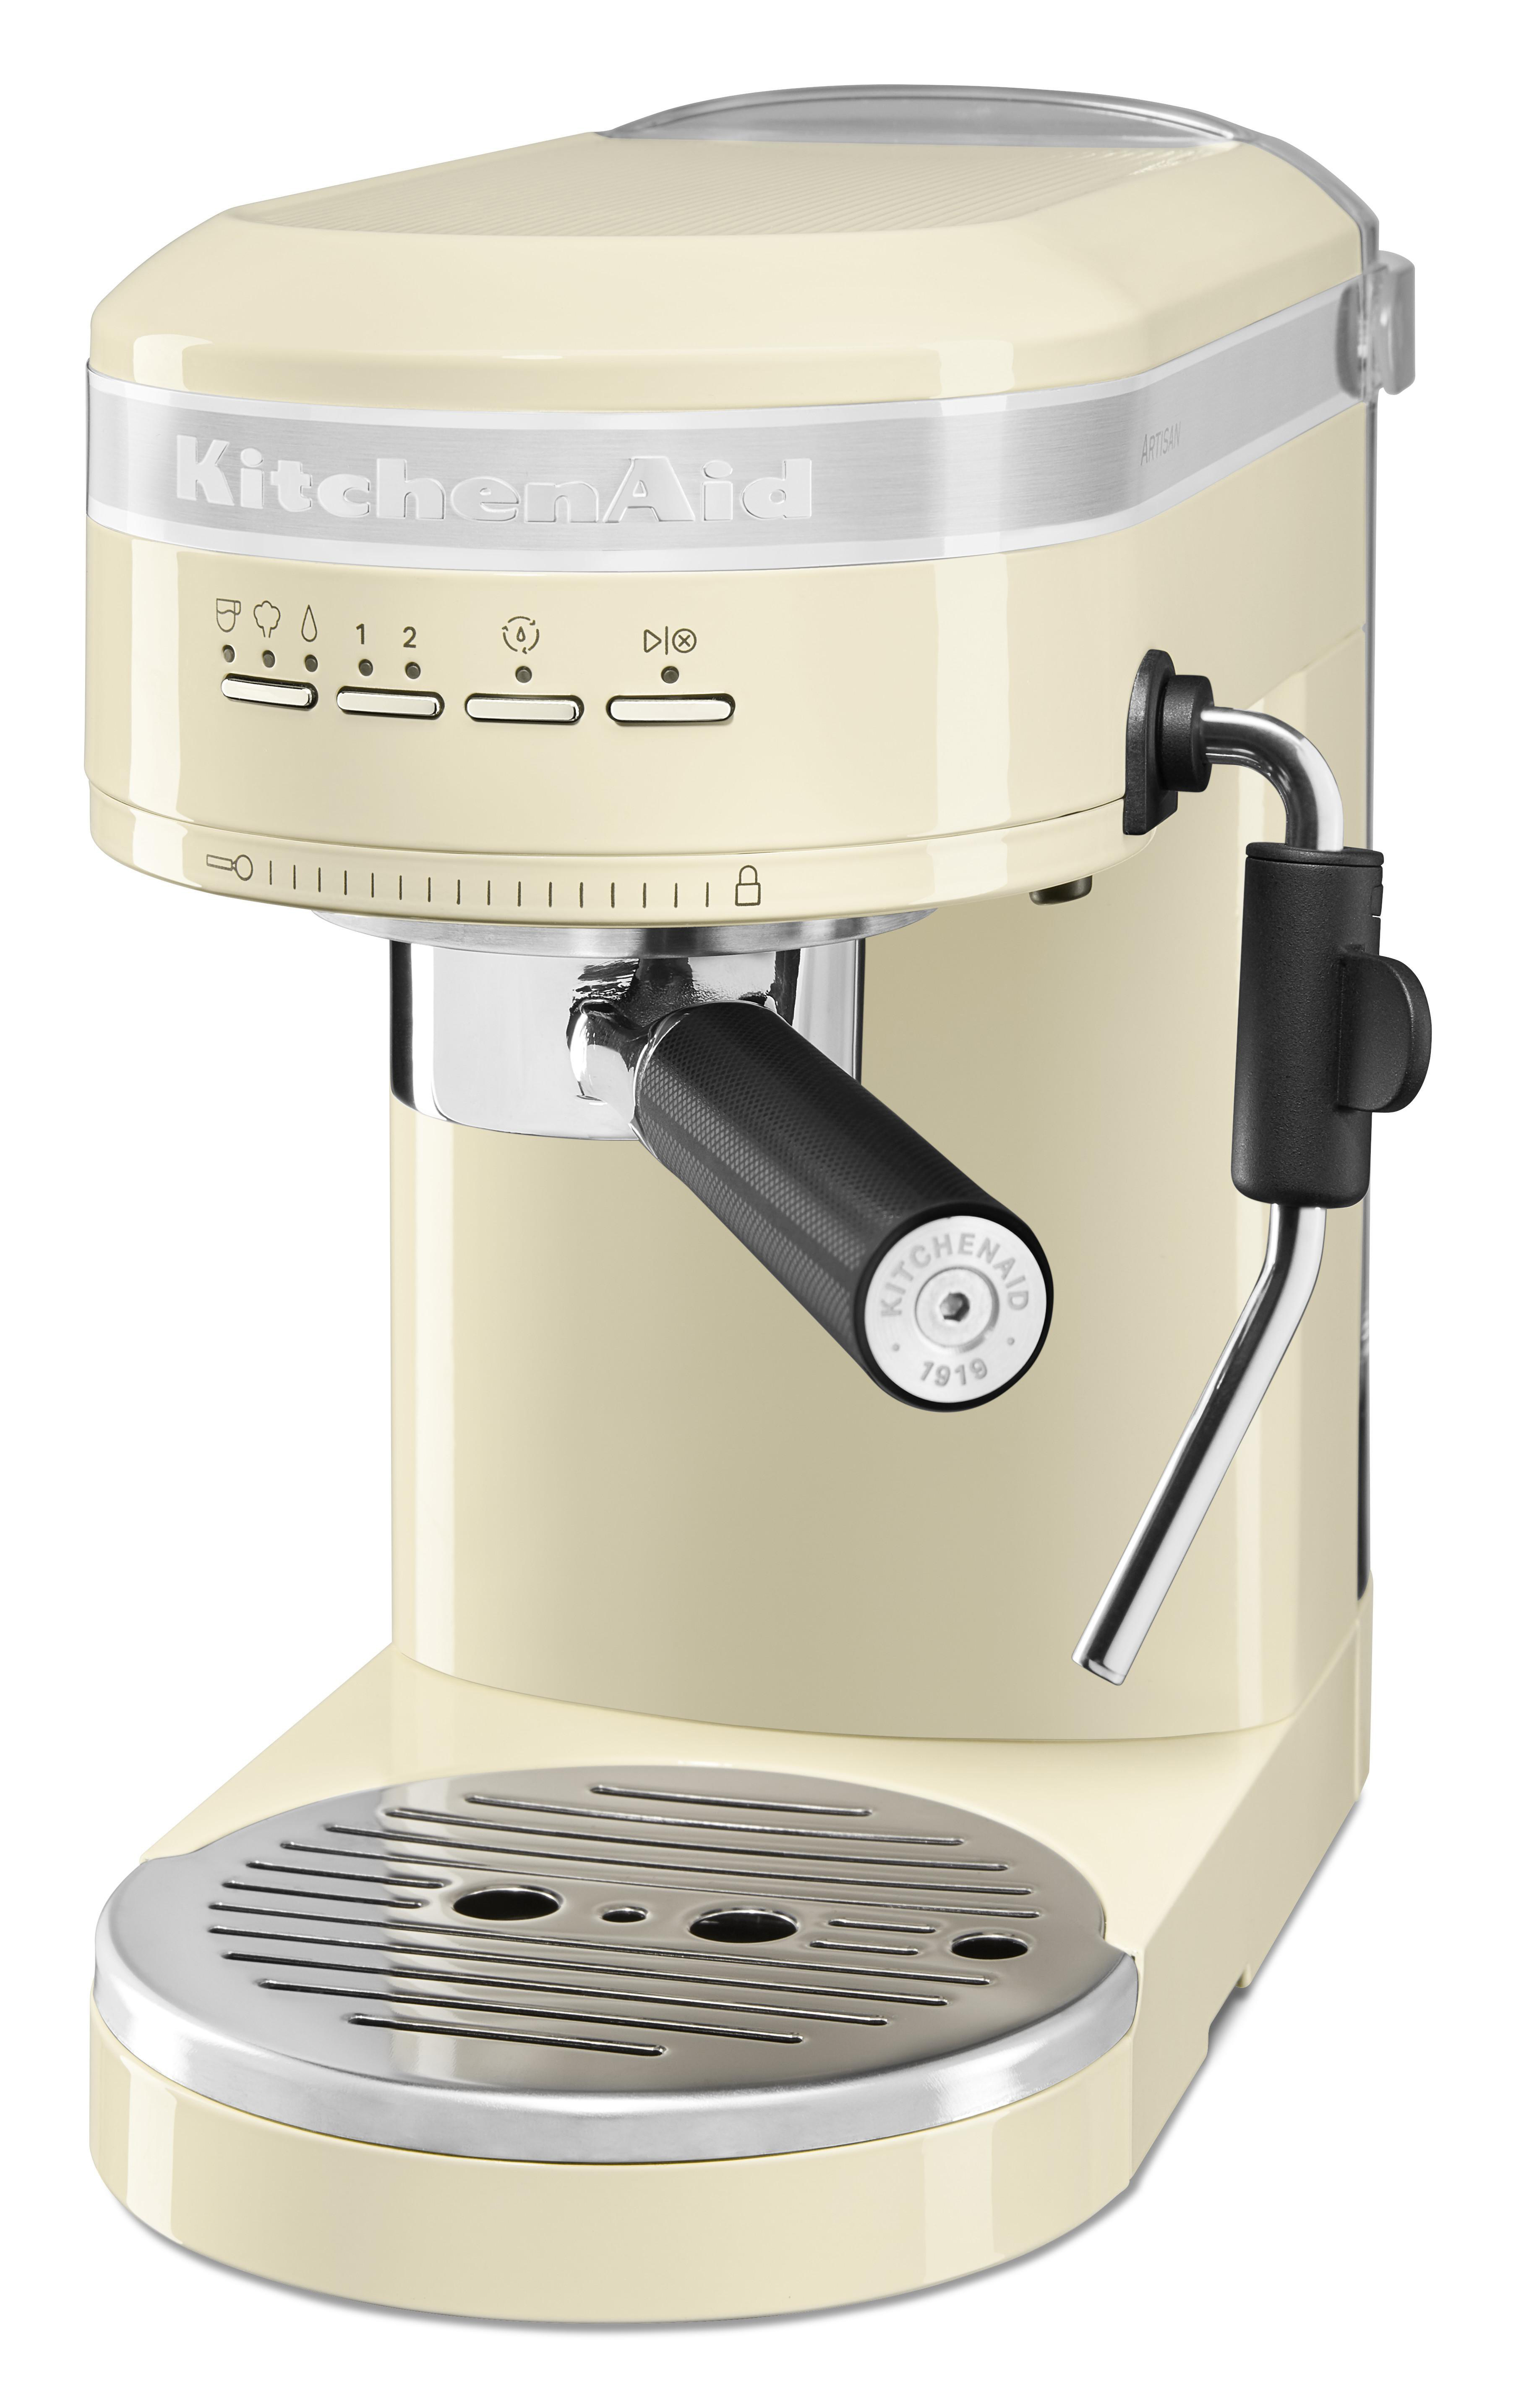 KITCHENAID 5KES6503EAC ARTISAN Creme Espressomaschine